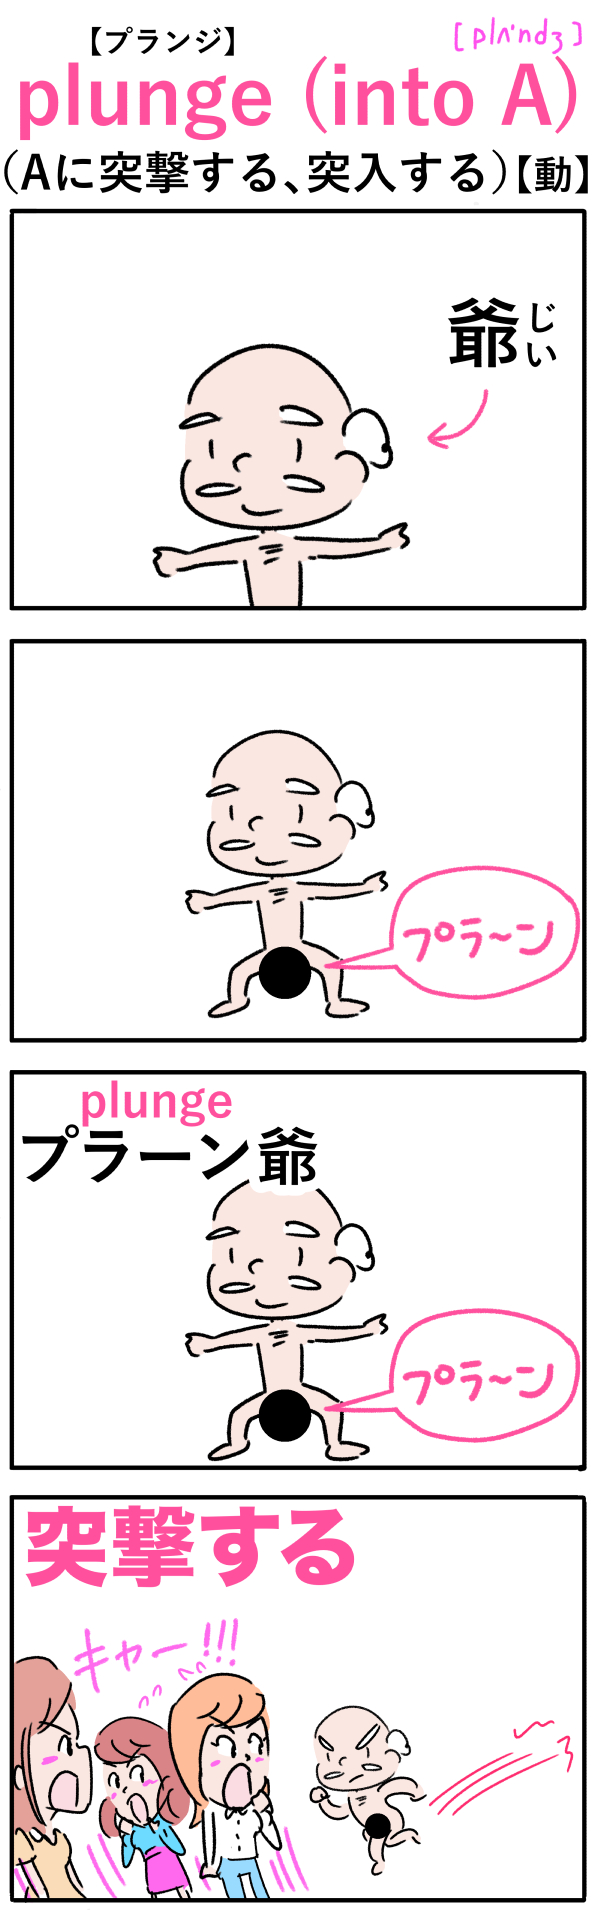 plunge（突撃する）の語呂合わせ英単語